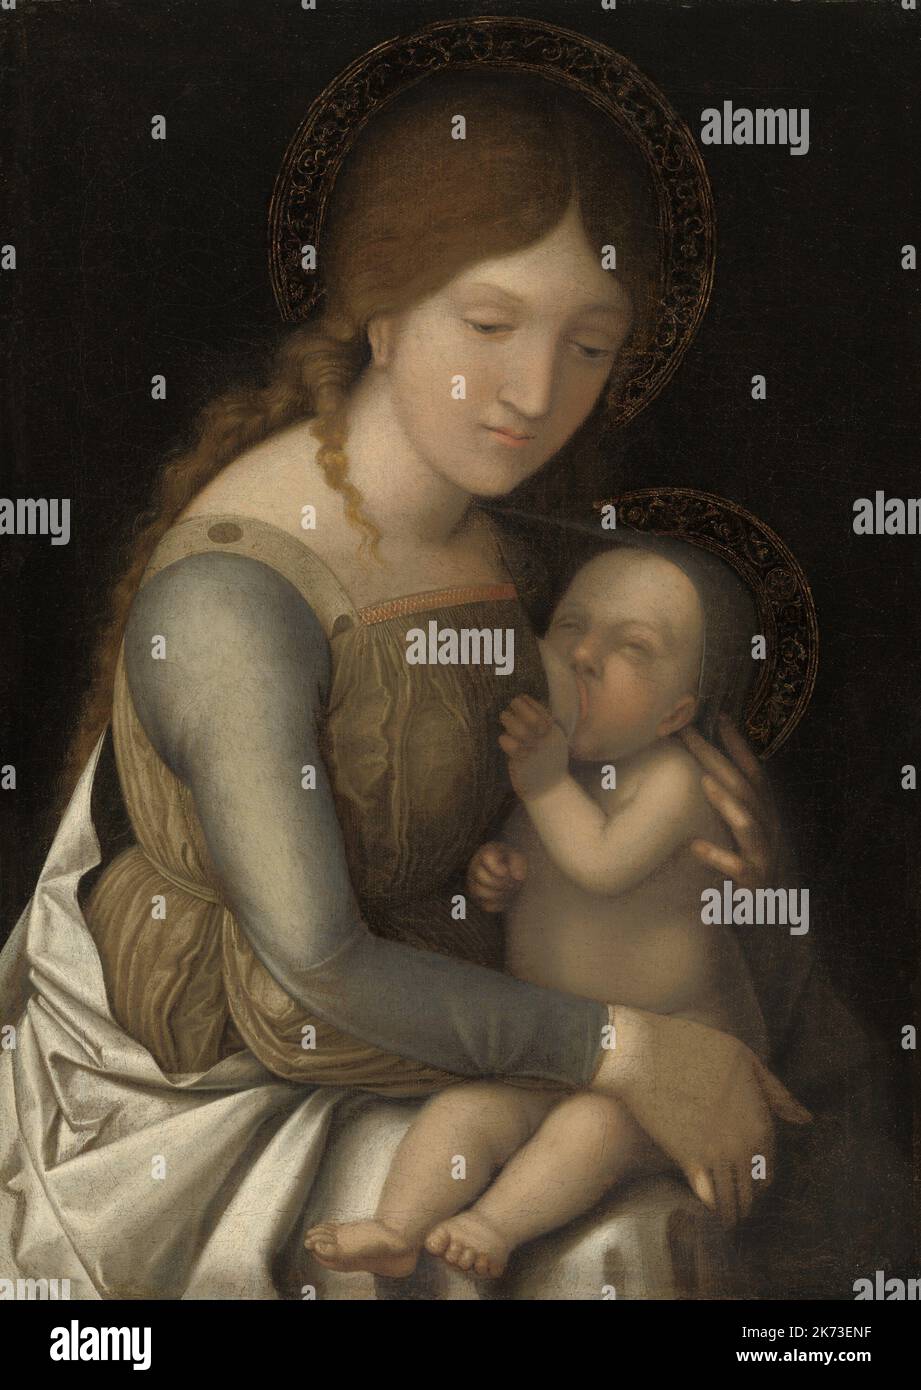 Atelier d'Andrea Mantegna - Madonna et enfant, vers 1505/1510 - huile sur toile Banque D'Images